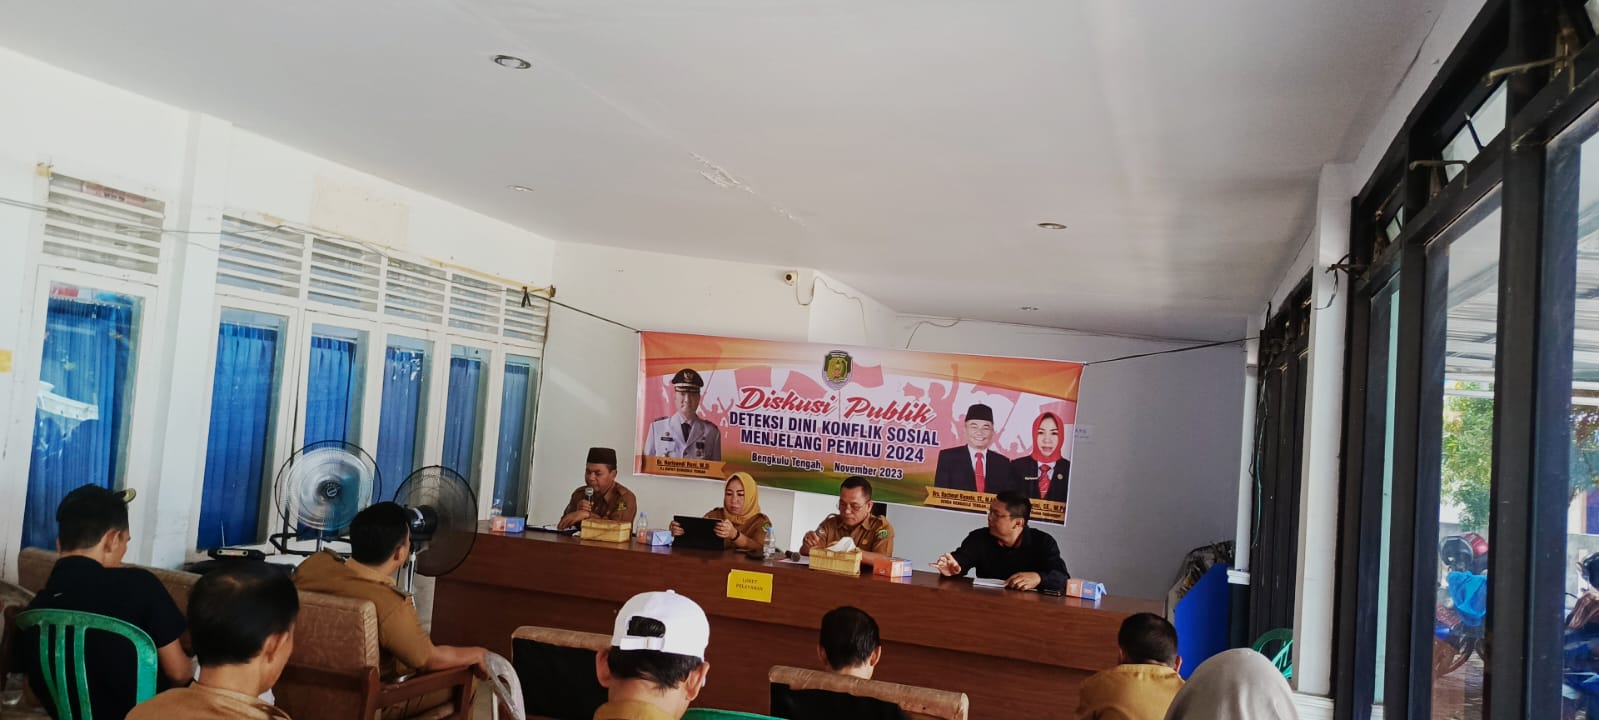 Cegah Konflik Sosial Pada Pemilu 2024, Kesbangpol Ajak Diskusi Publik Perwakilan 11 Kecamatan